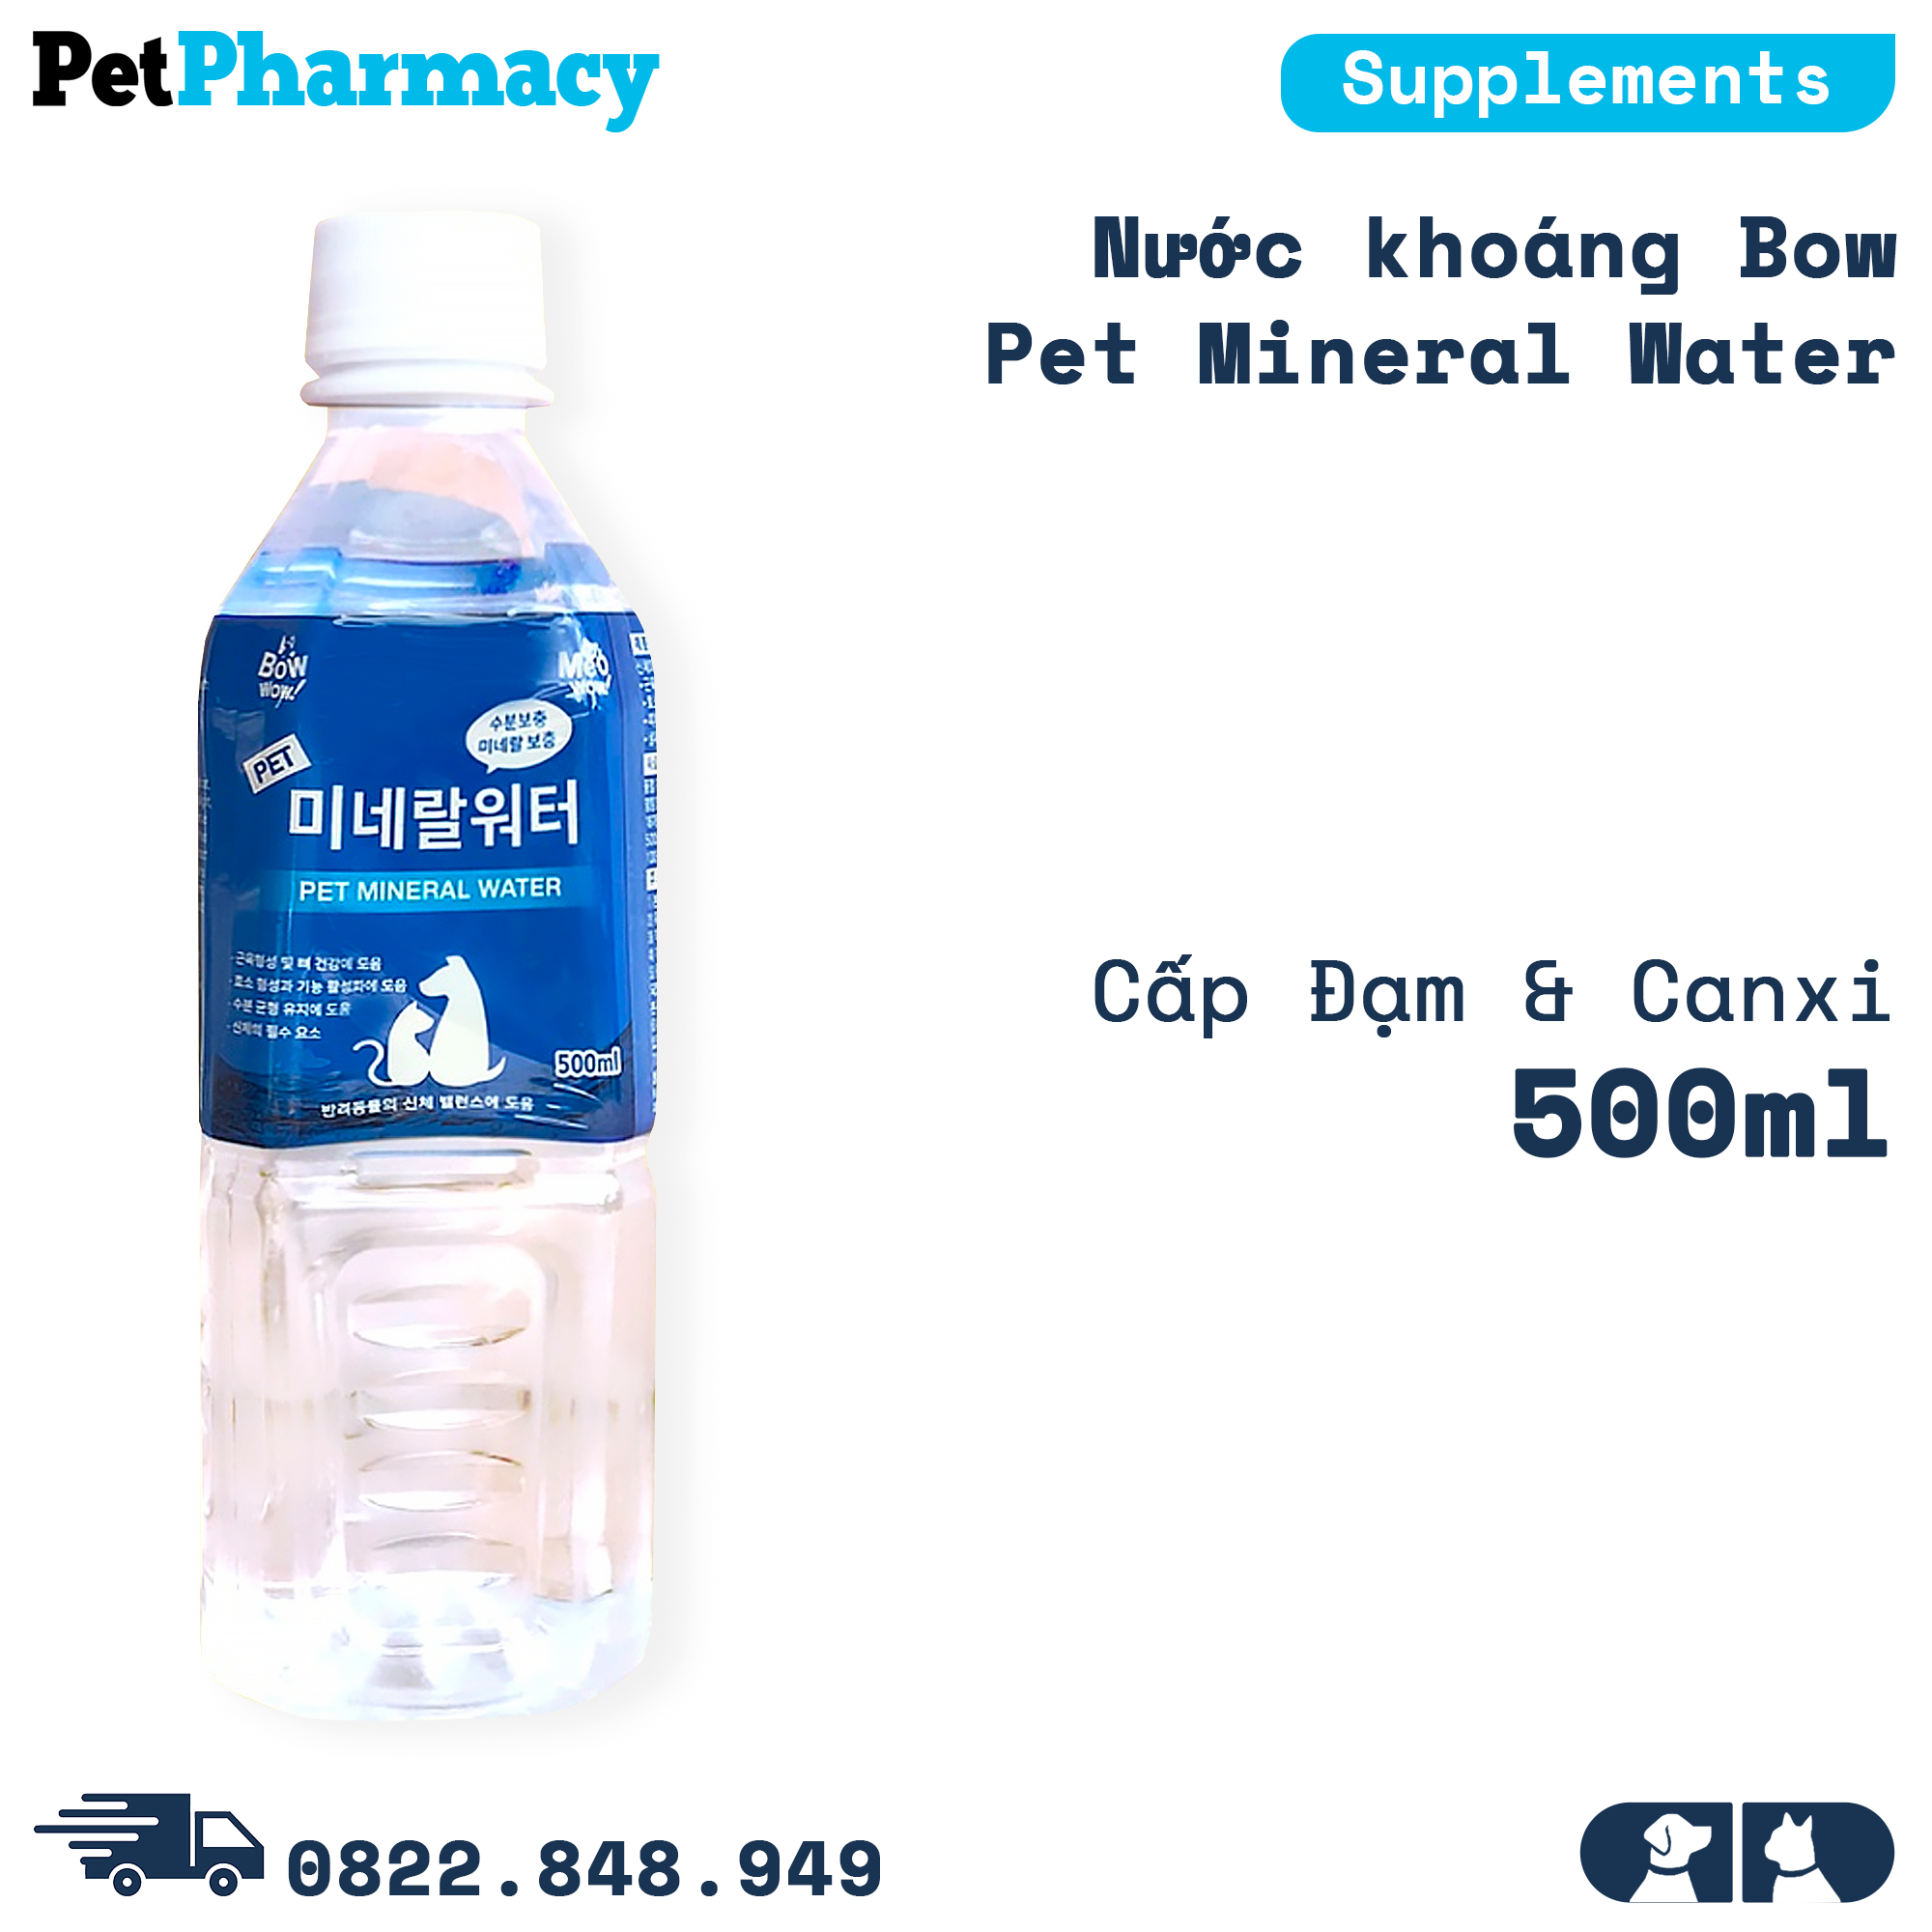  Nước khoáng Bow Pet Mineral Water 500ml - Cấp Đạm & Canxi PetPharmacy 